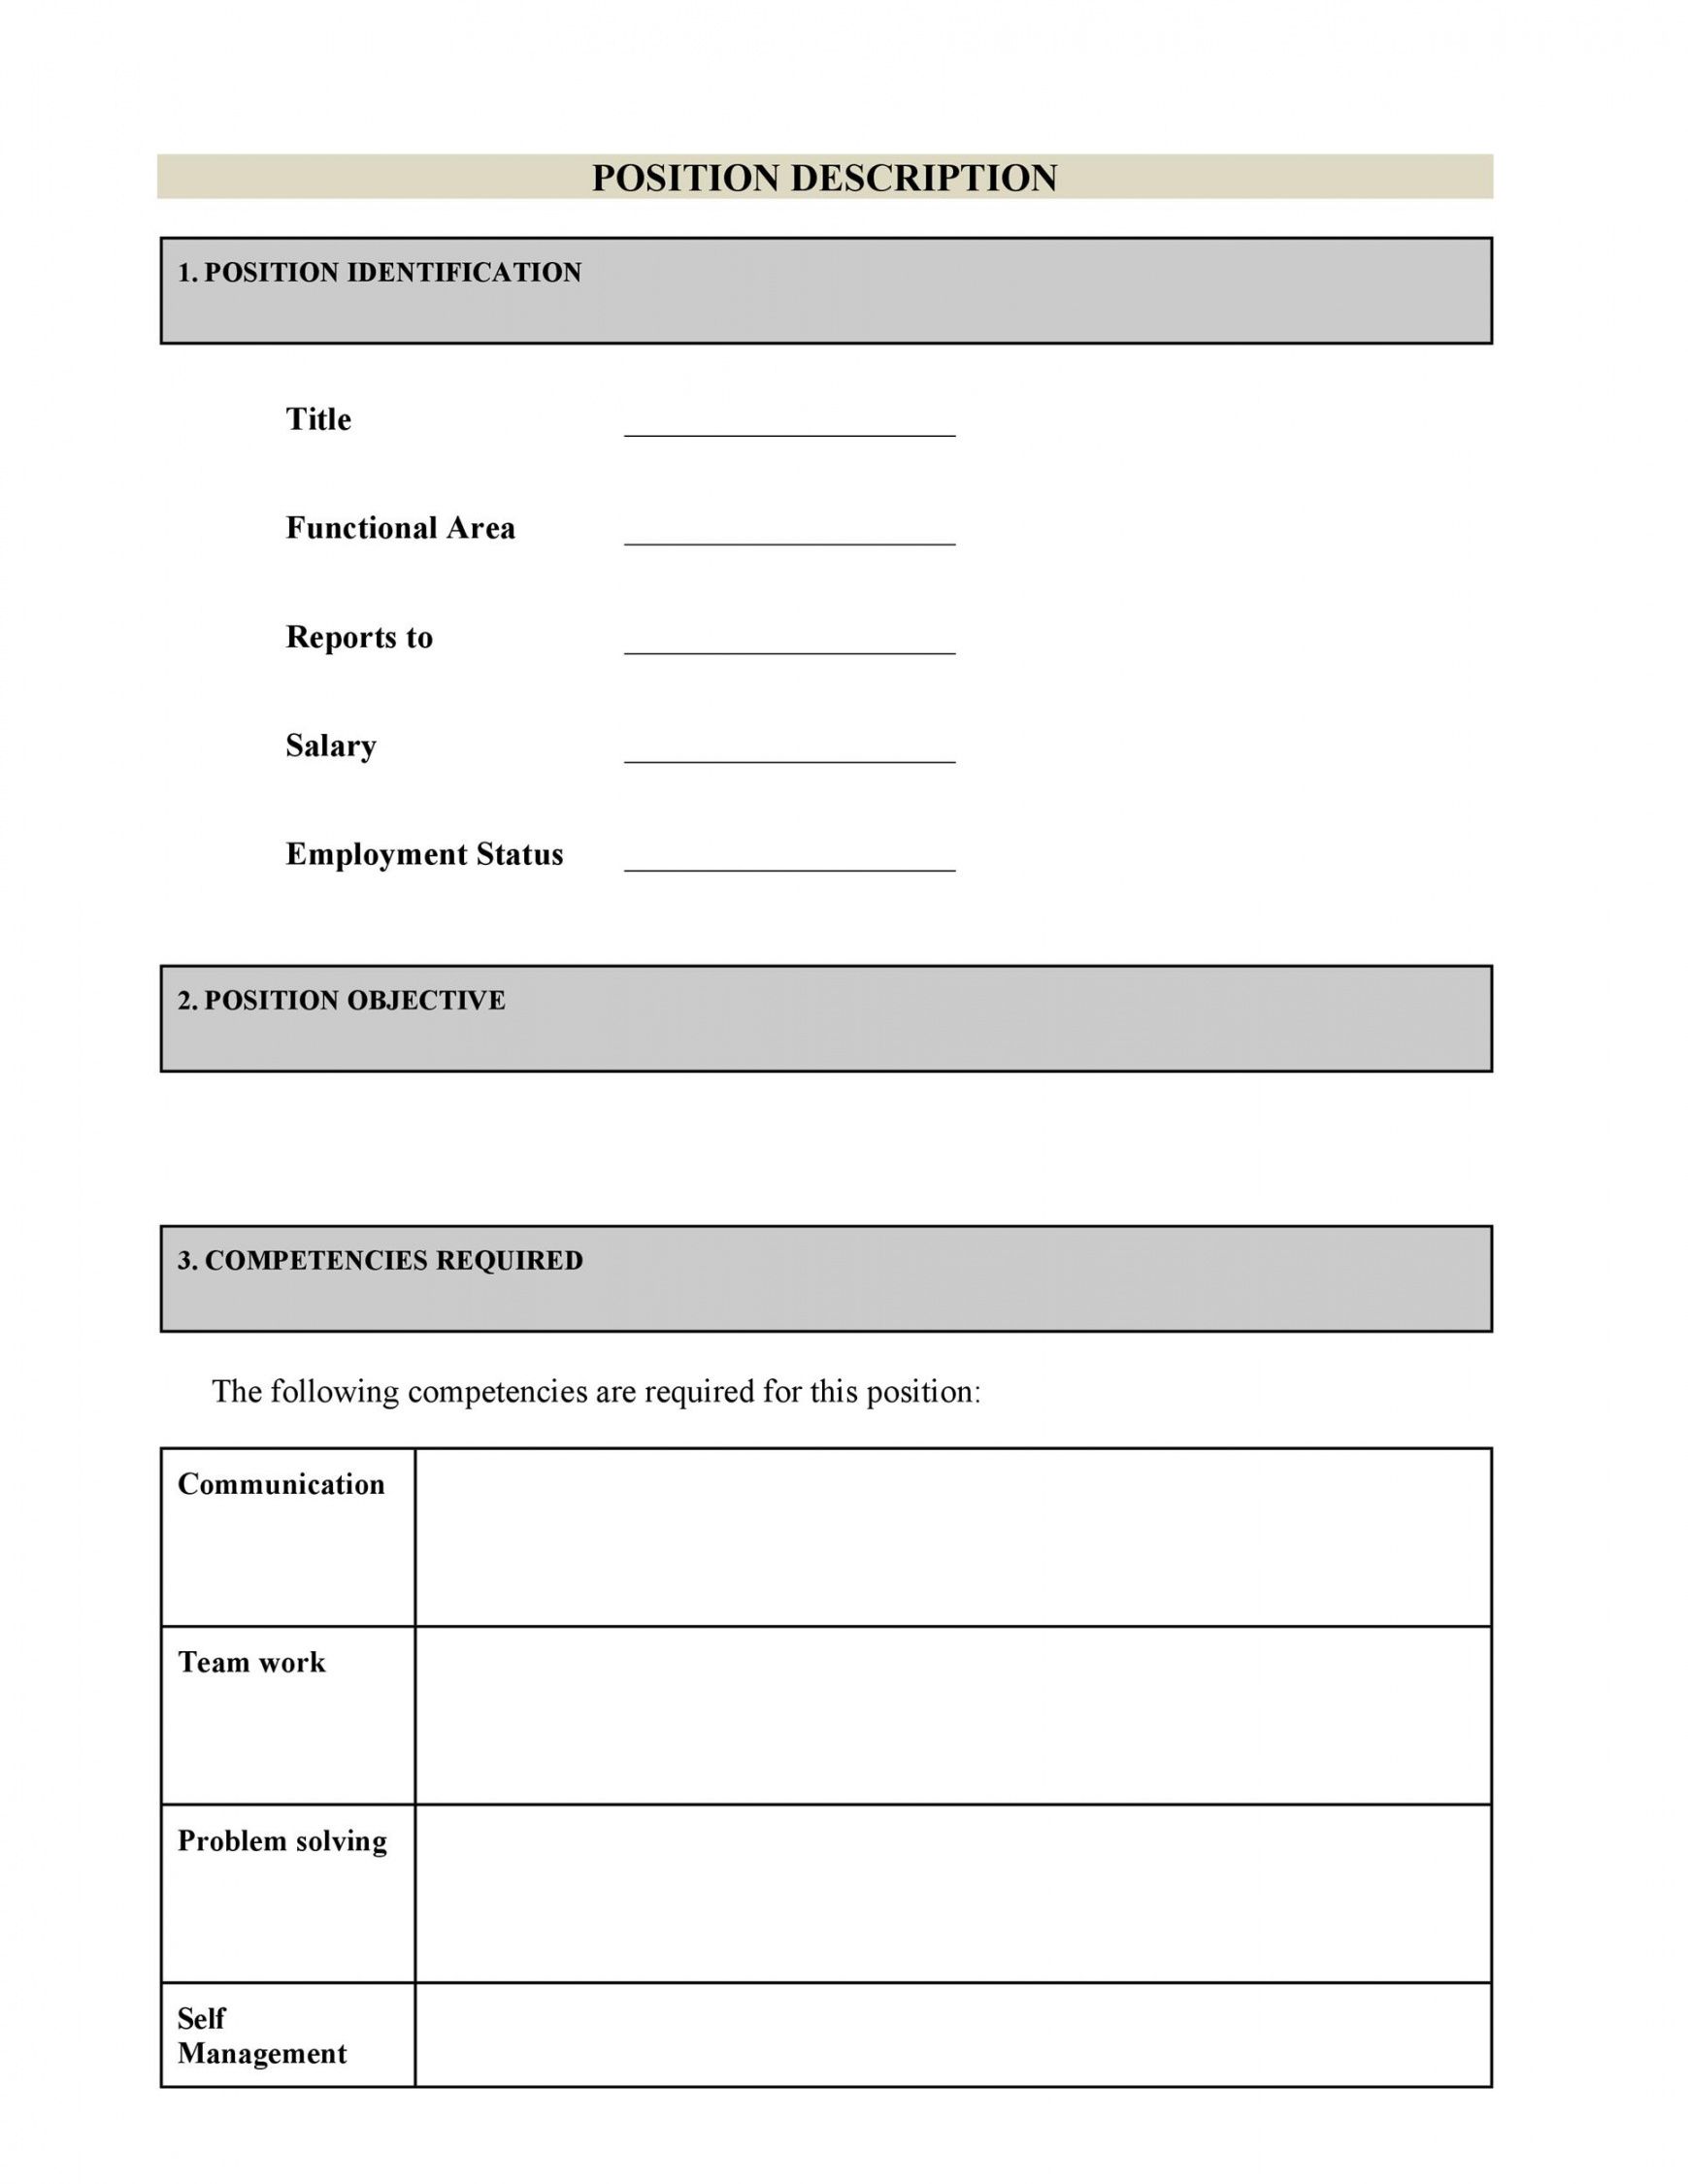 47 job description templates &amp; examples ᐅ templatelab simple job description template doc